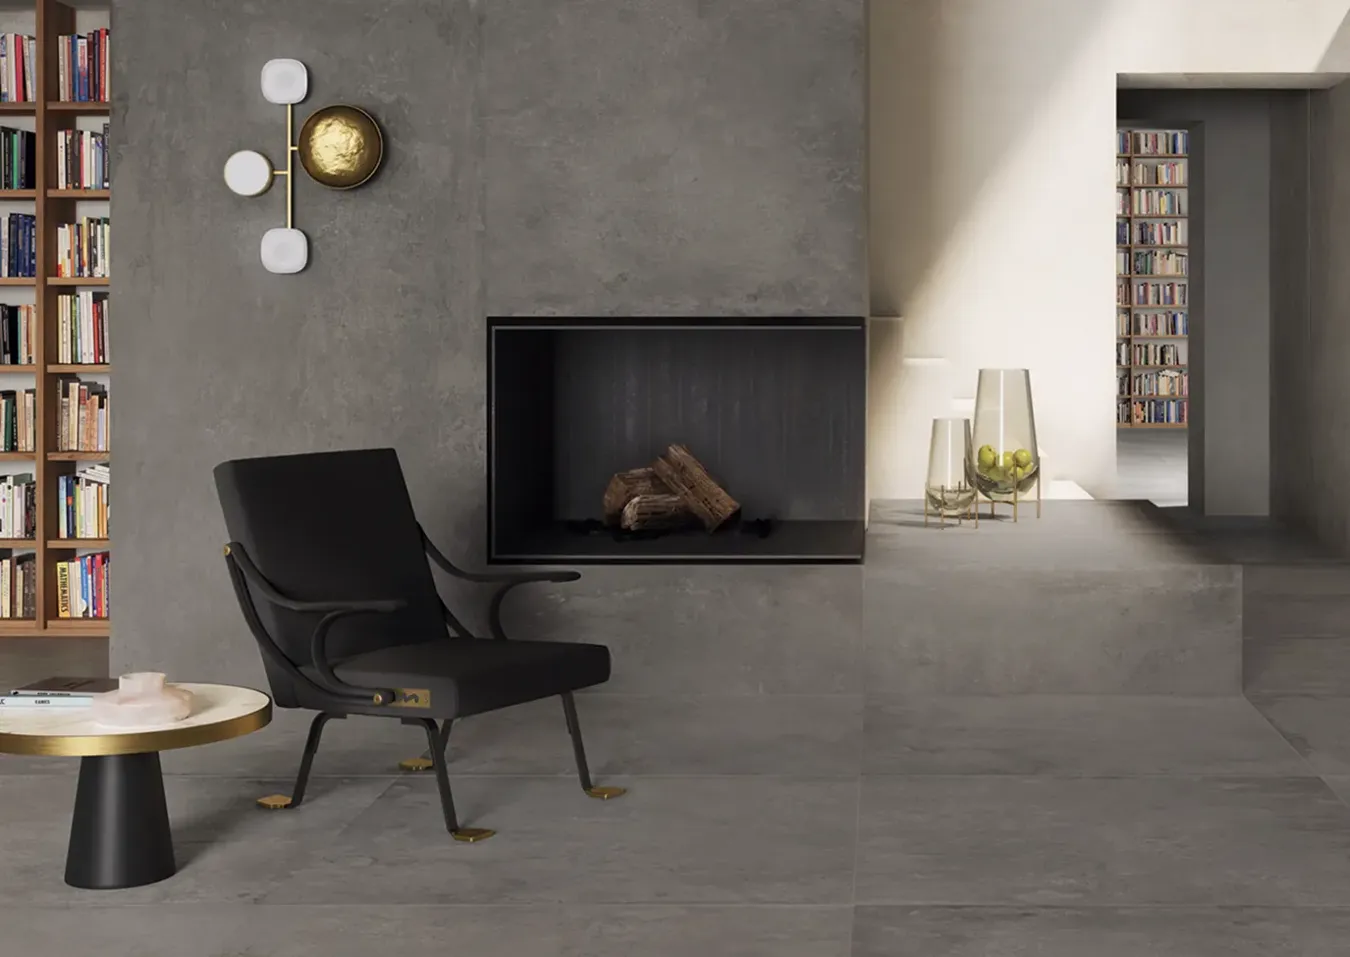 Salon contemporain avec cheminée carrelée effet béton gris, siège design noir et accents dorés